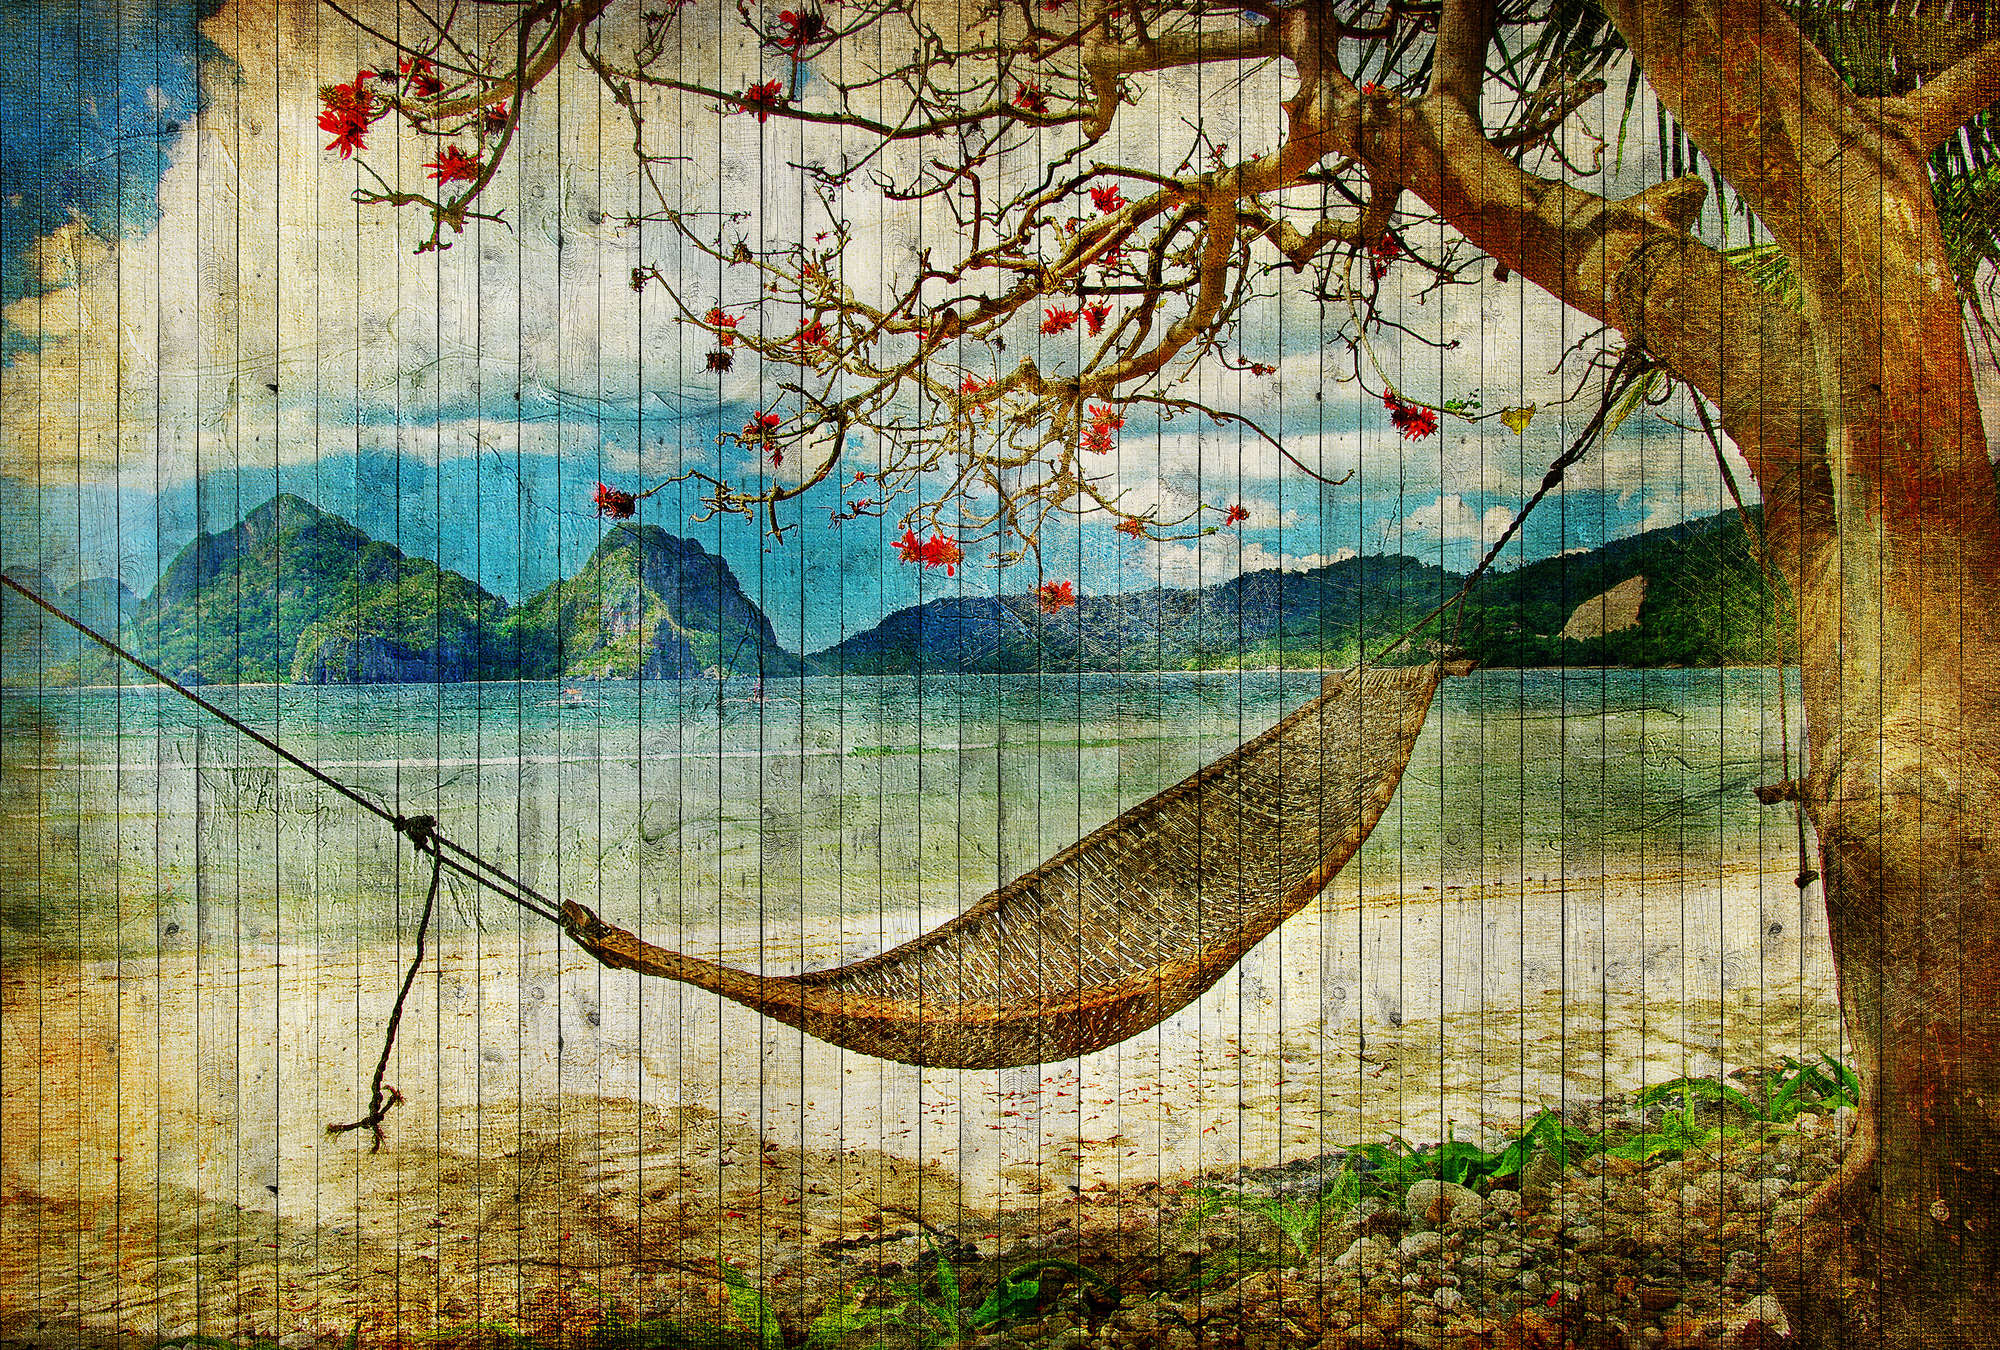             Tahiti 2 - Papier peint aspect bois avec hamac & plage des mers du sud - beige, bleu | intissé lisse nacré
        